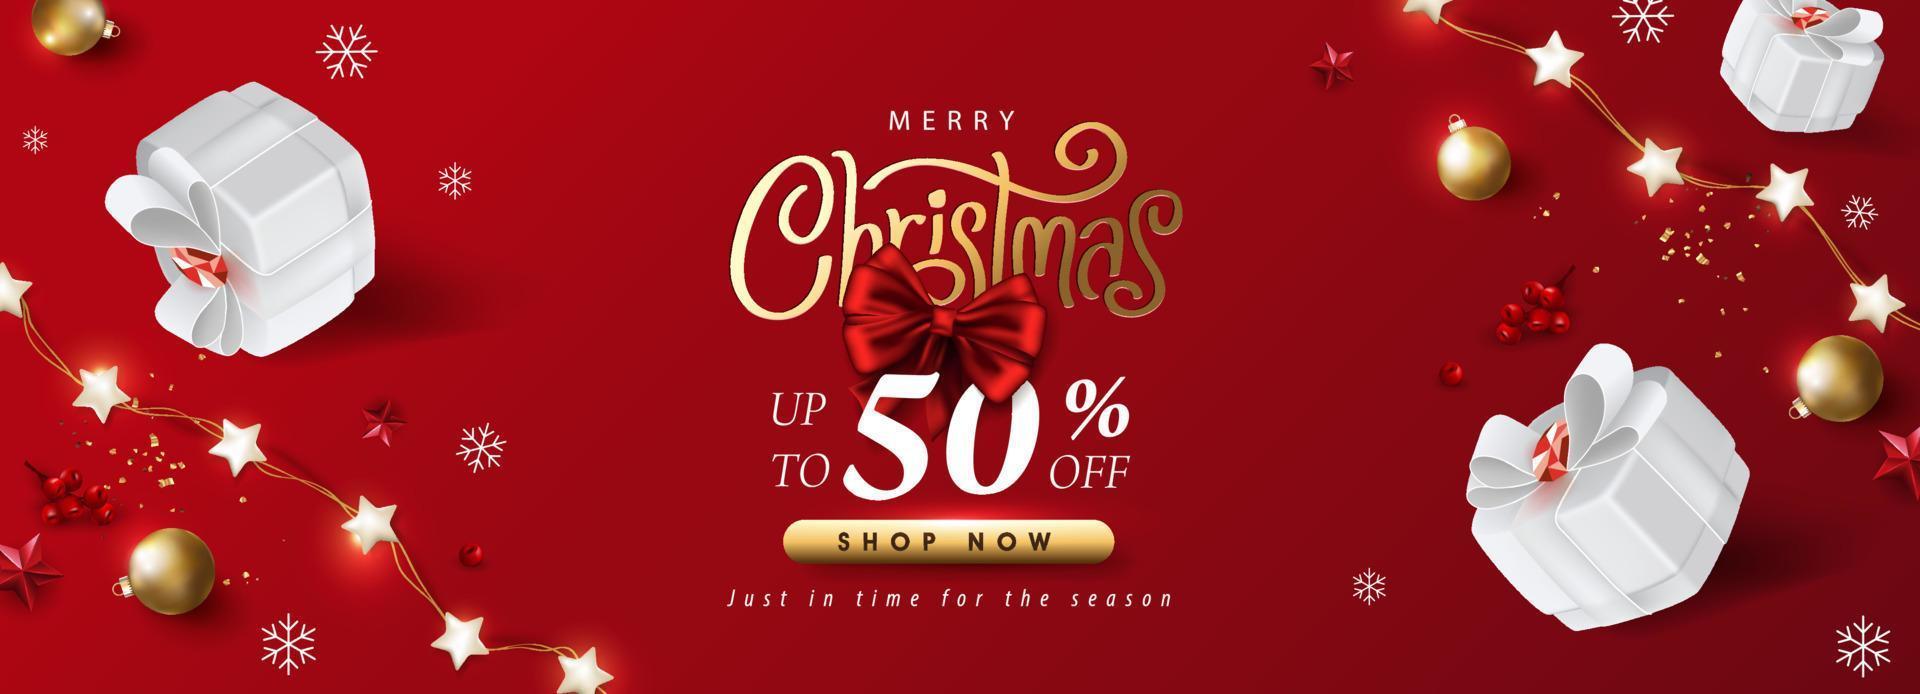 Frohe Weihnachten Verkaufsförderungsbanner mit Geschenkbox und festlicher Dekoration auf rotem Hintergrund vektor